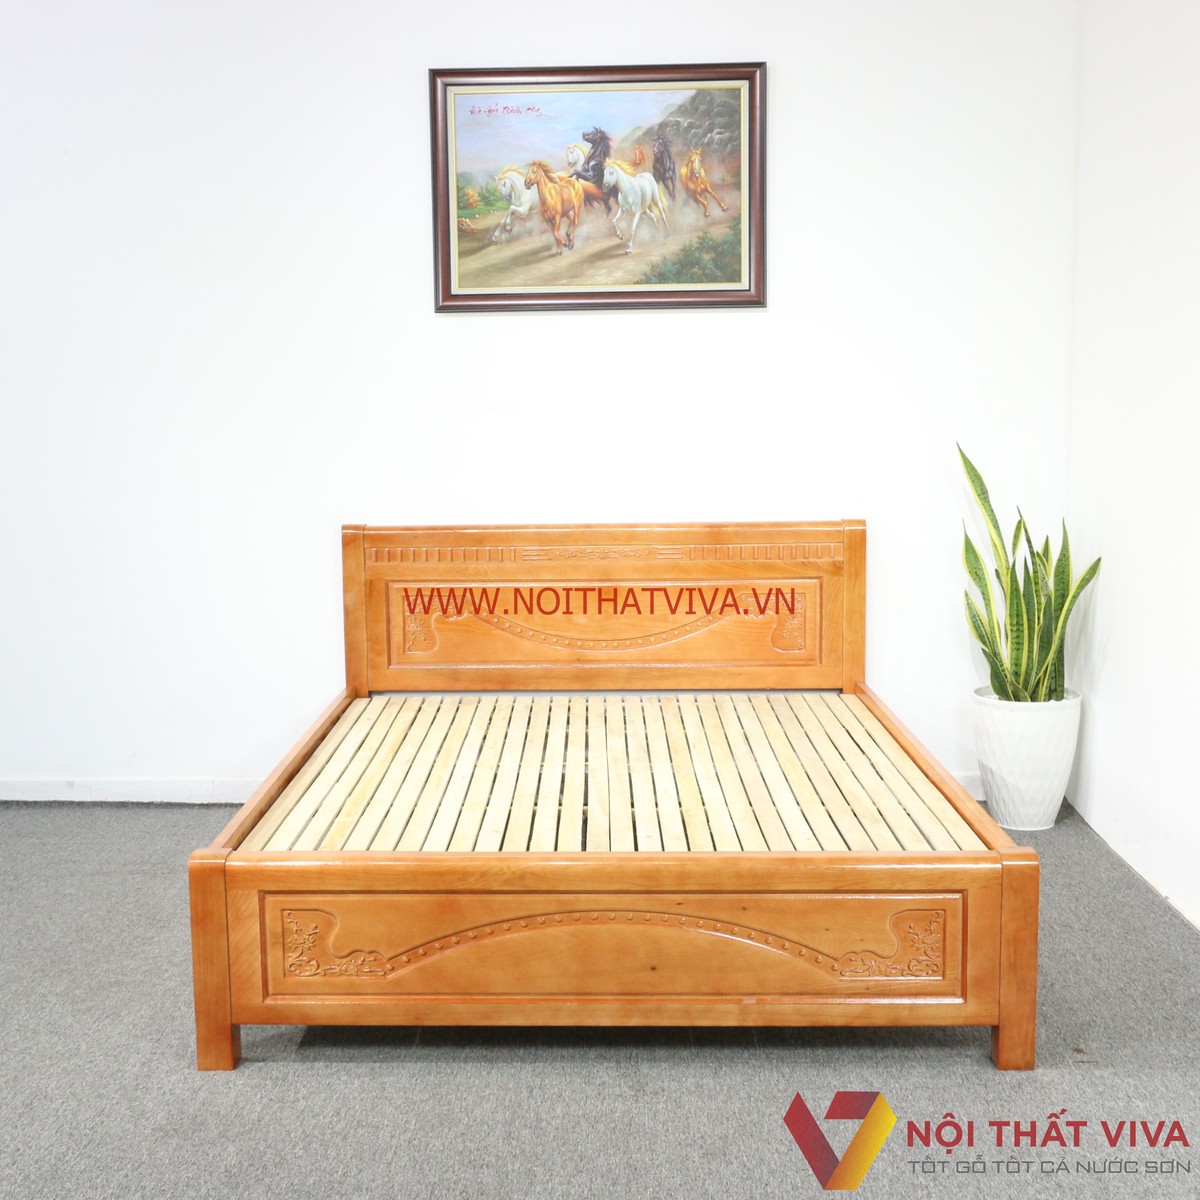  giường ngủ gỗ sồi giá rẻ